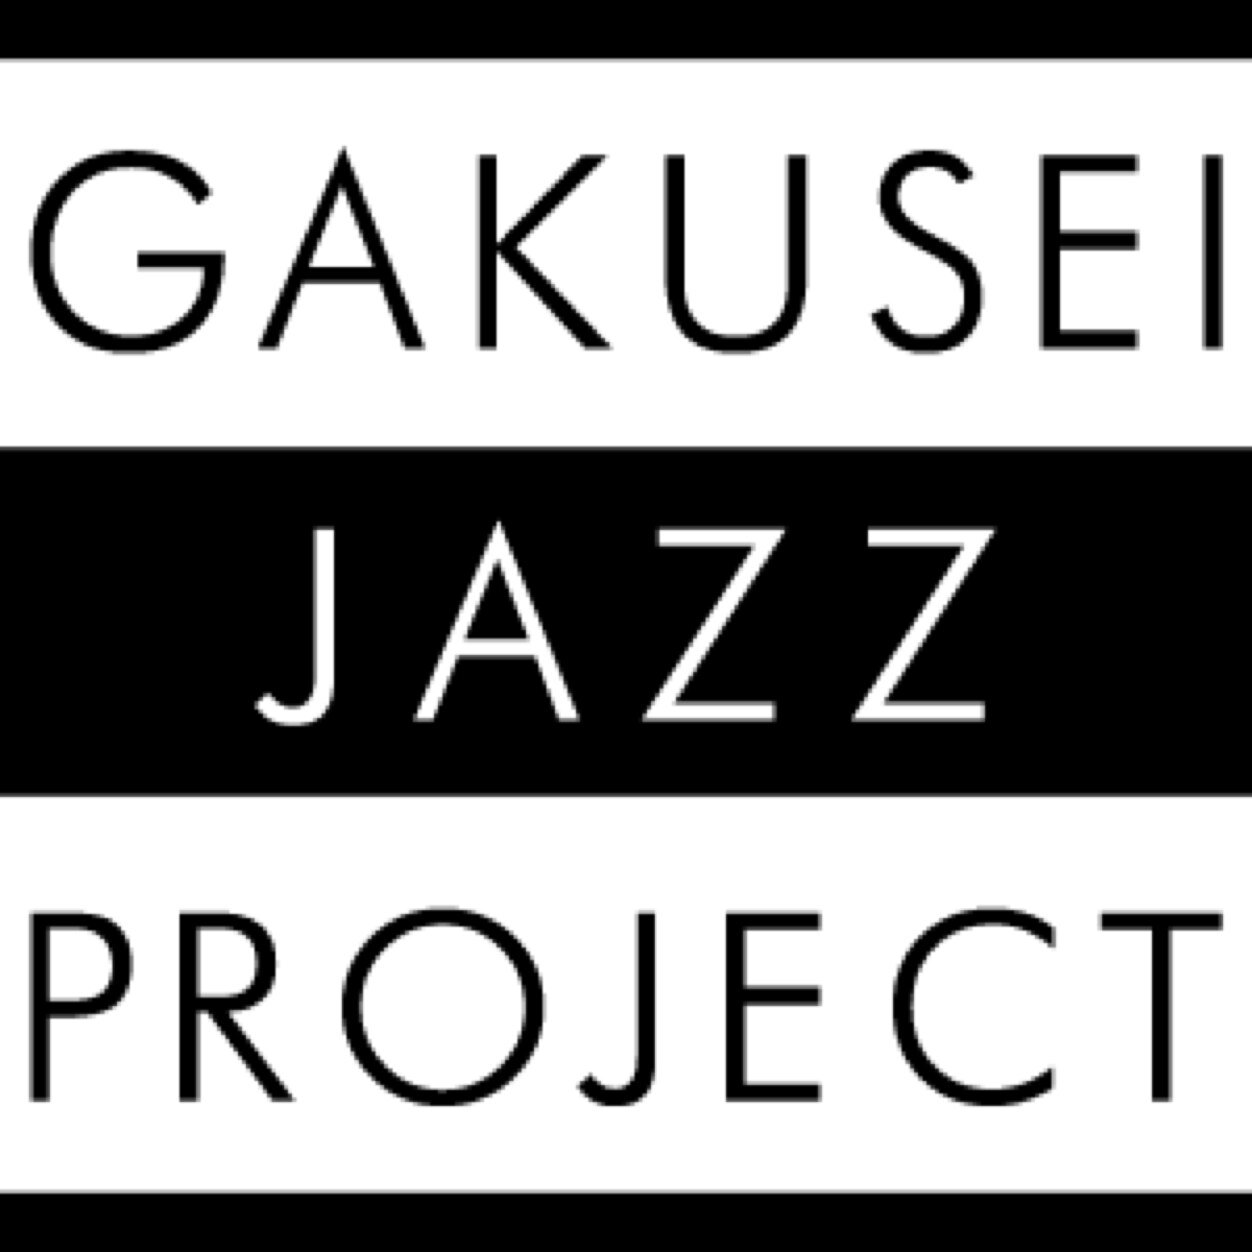 学生ジャズプロジェクト(旧代々木ジャズ) はJazzLineなどのイベントを企画、運営していた学生団体です。現在解散状態となっていましたが、有志メンバーが集まり、ジャズ関係者への情報拡散支援をしています。